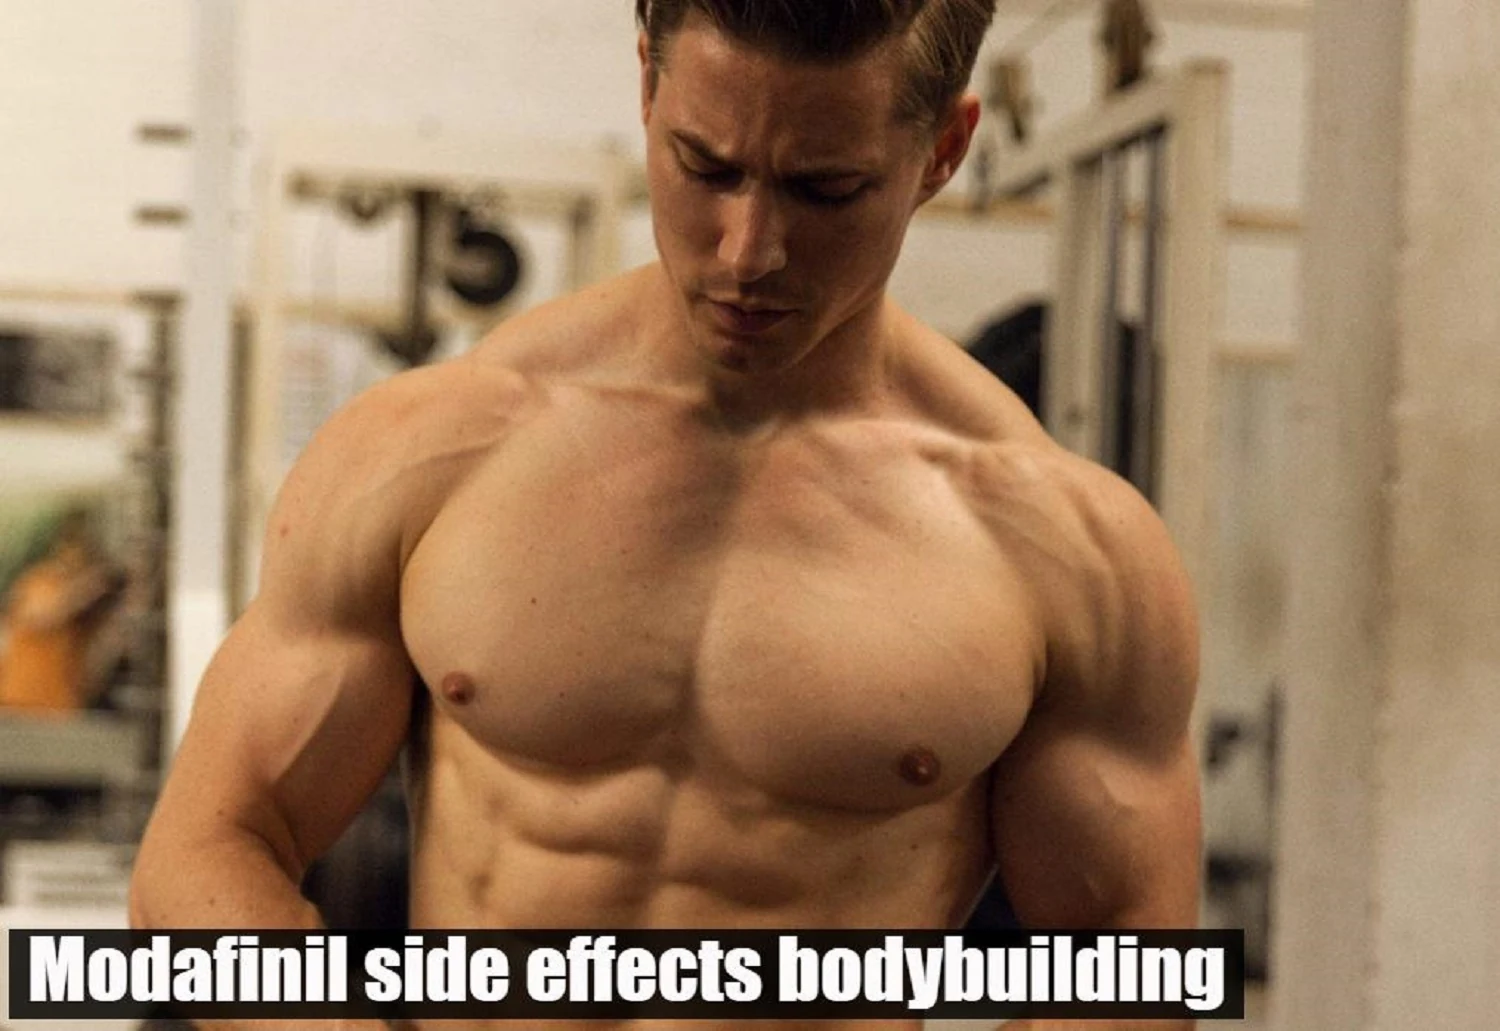 Modafinil side effects in bodybuilding